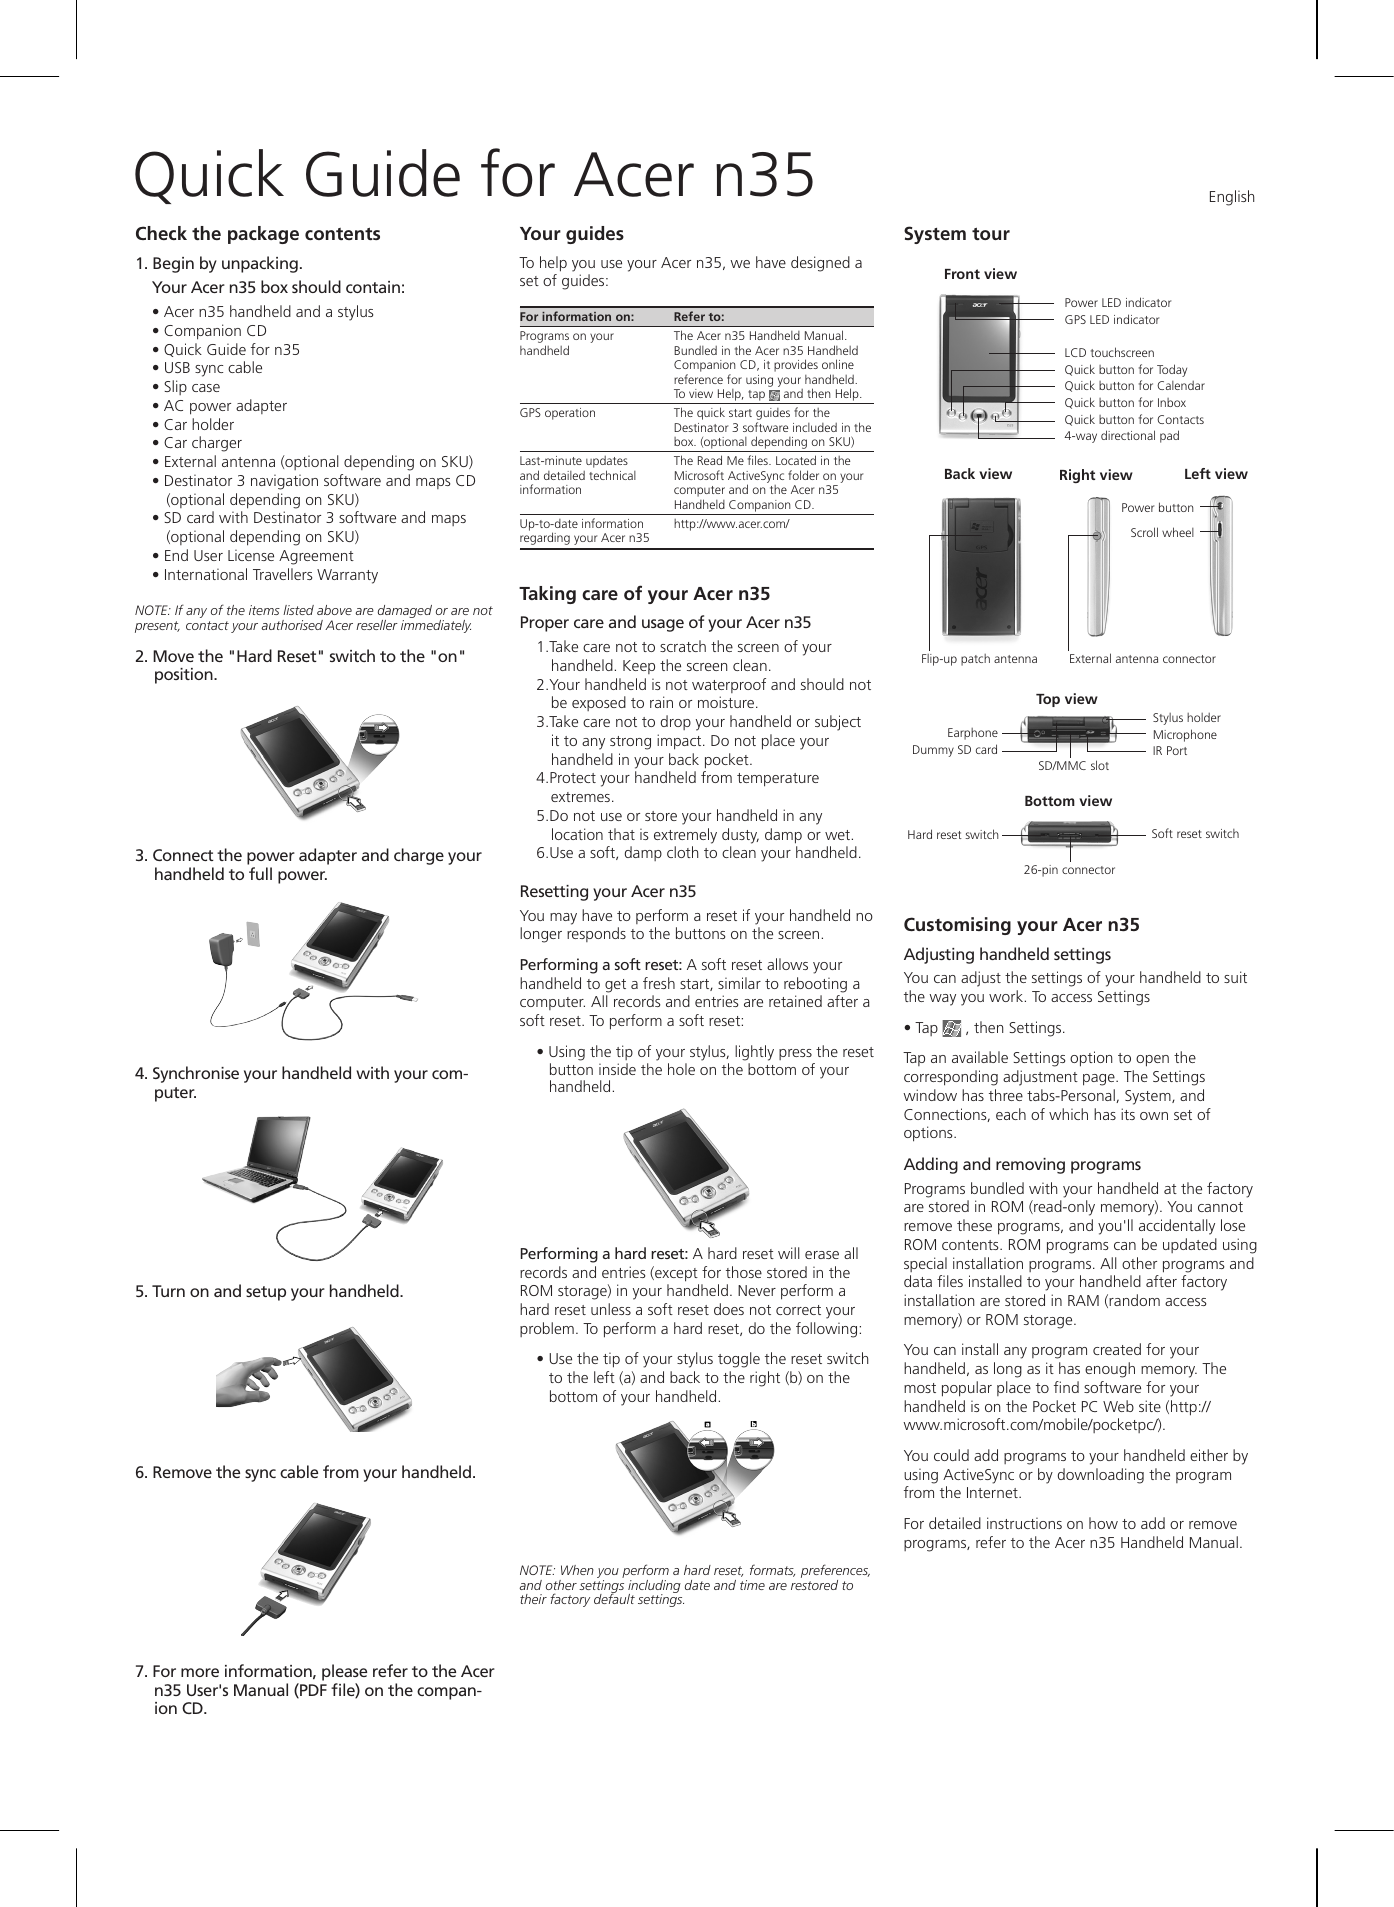 Acer n35 manual